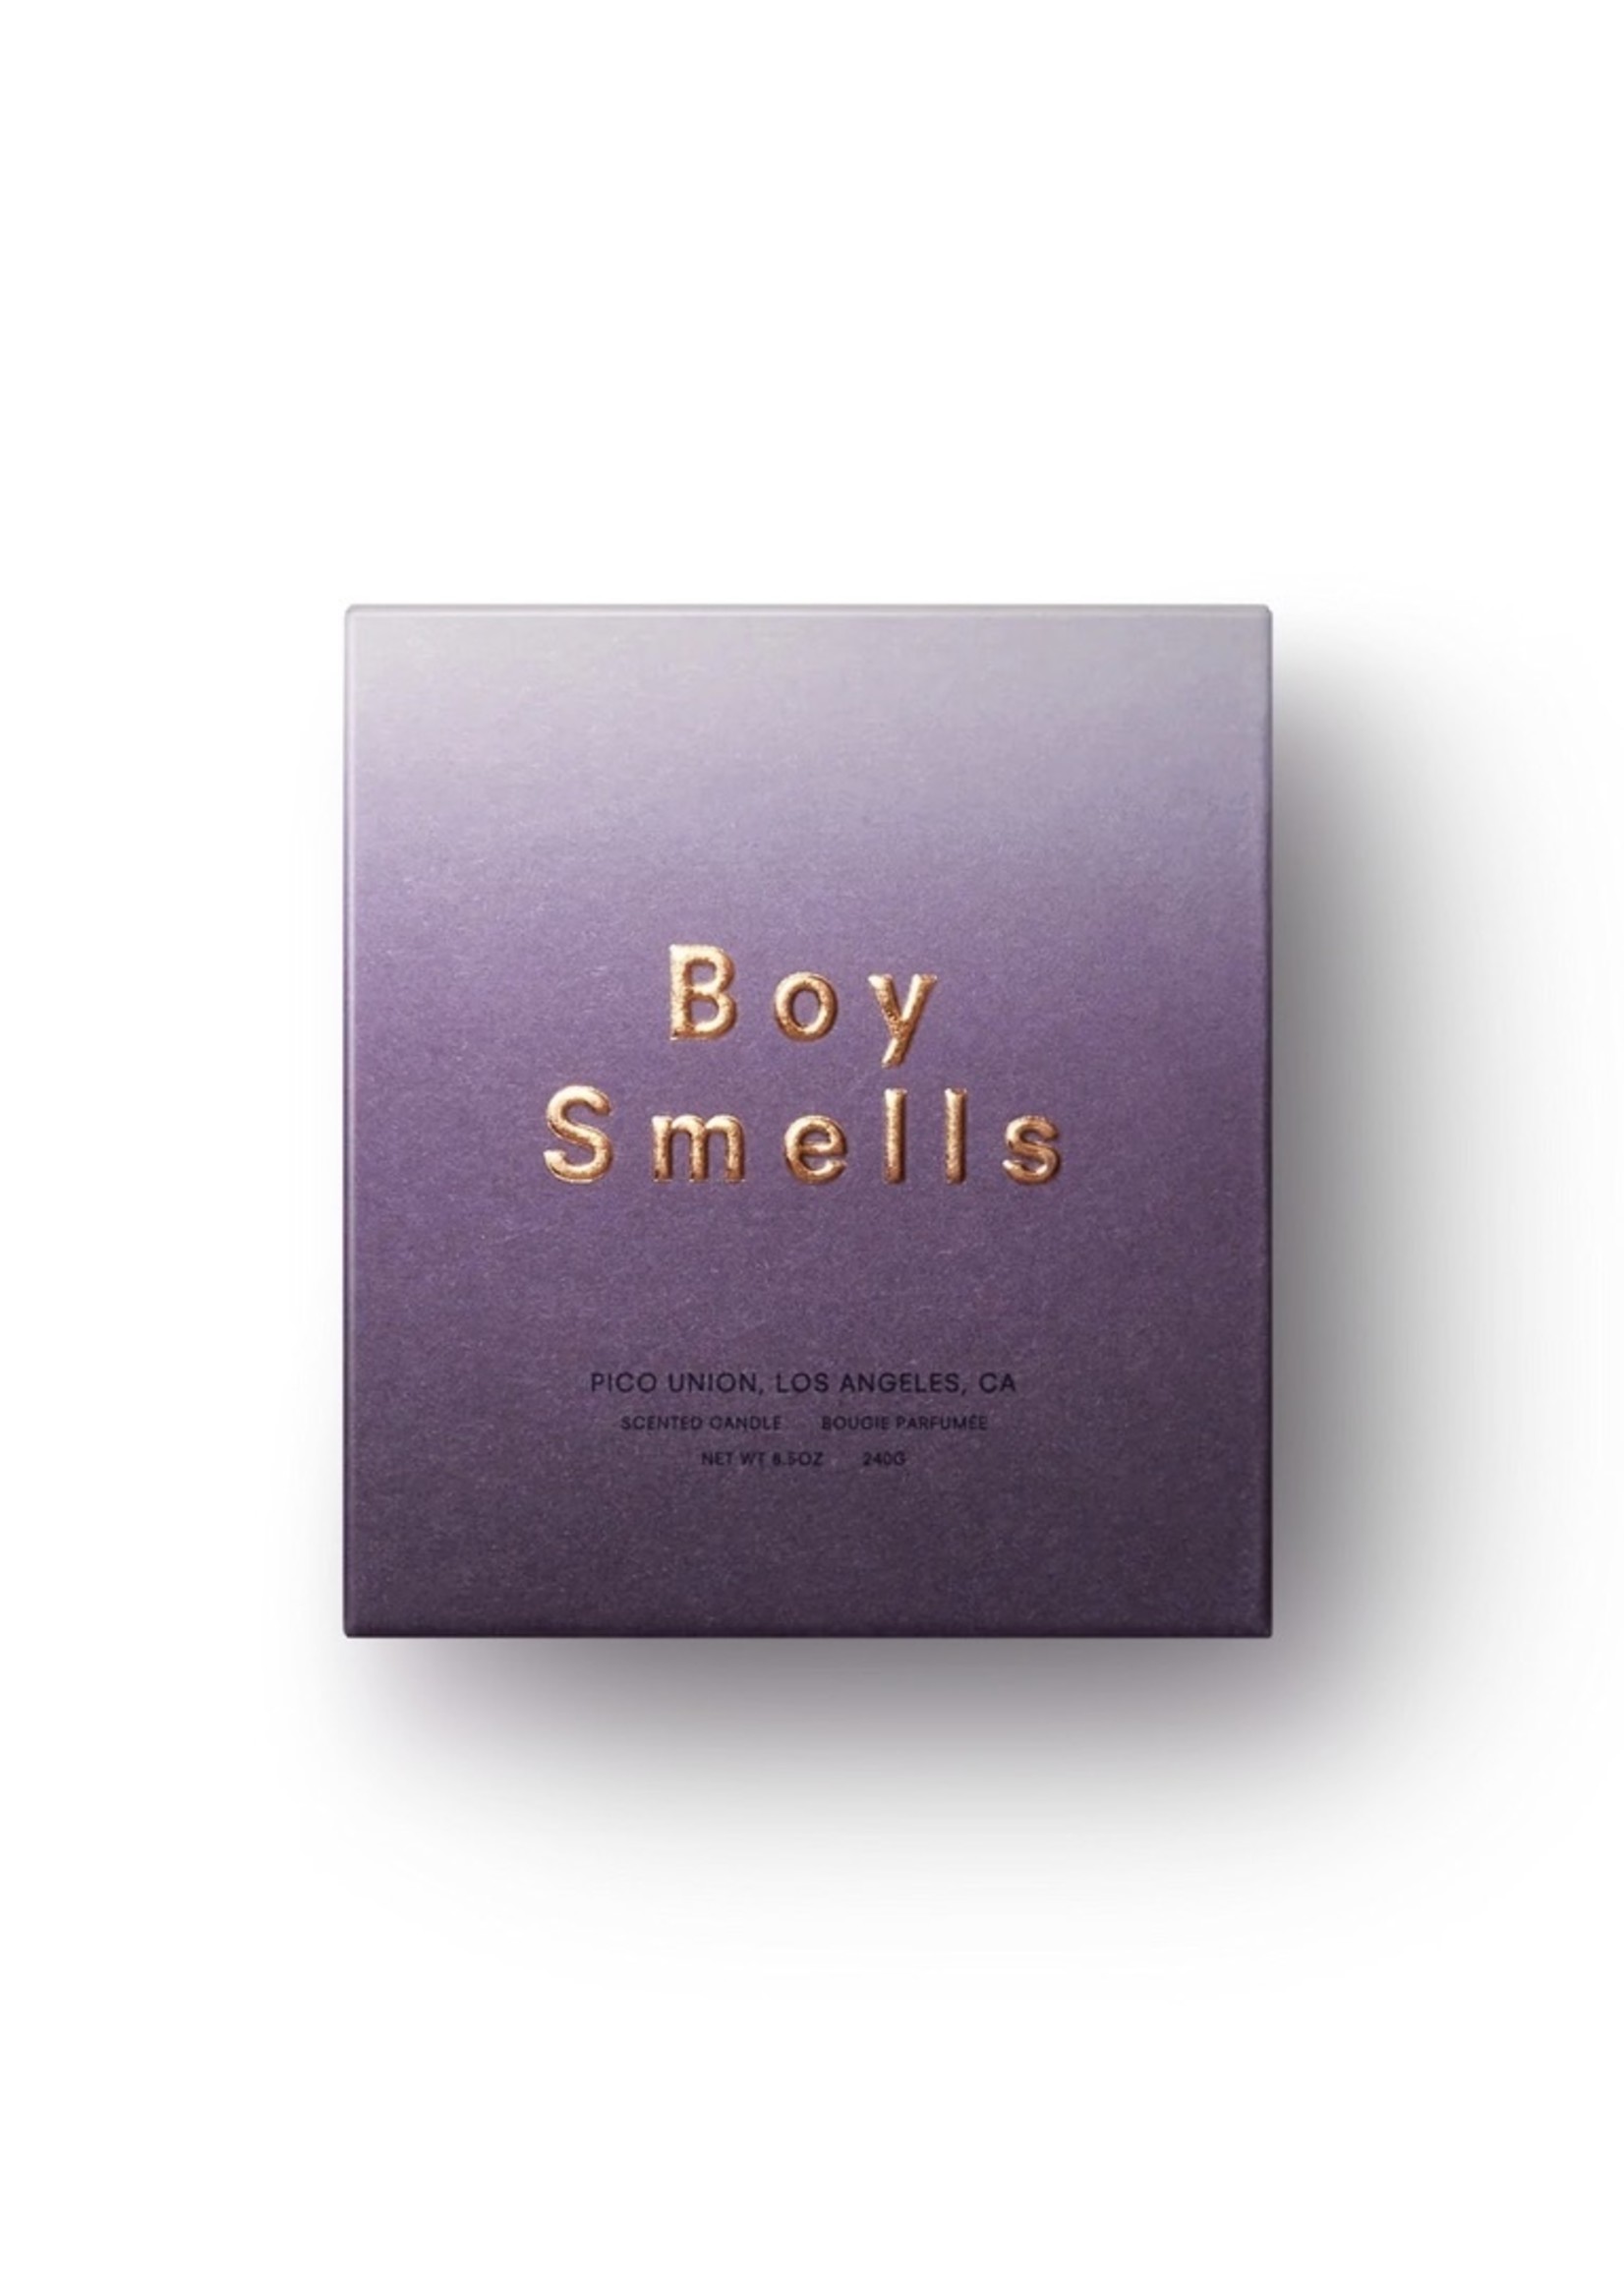 Boy Smells Candles "Hypernature" by BOYSMELLS